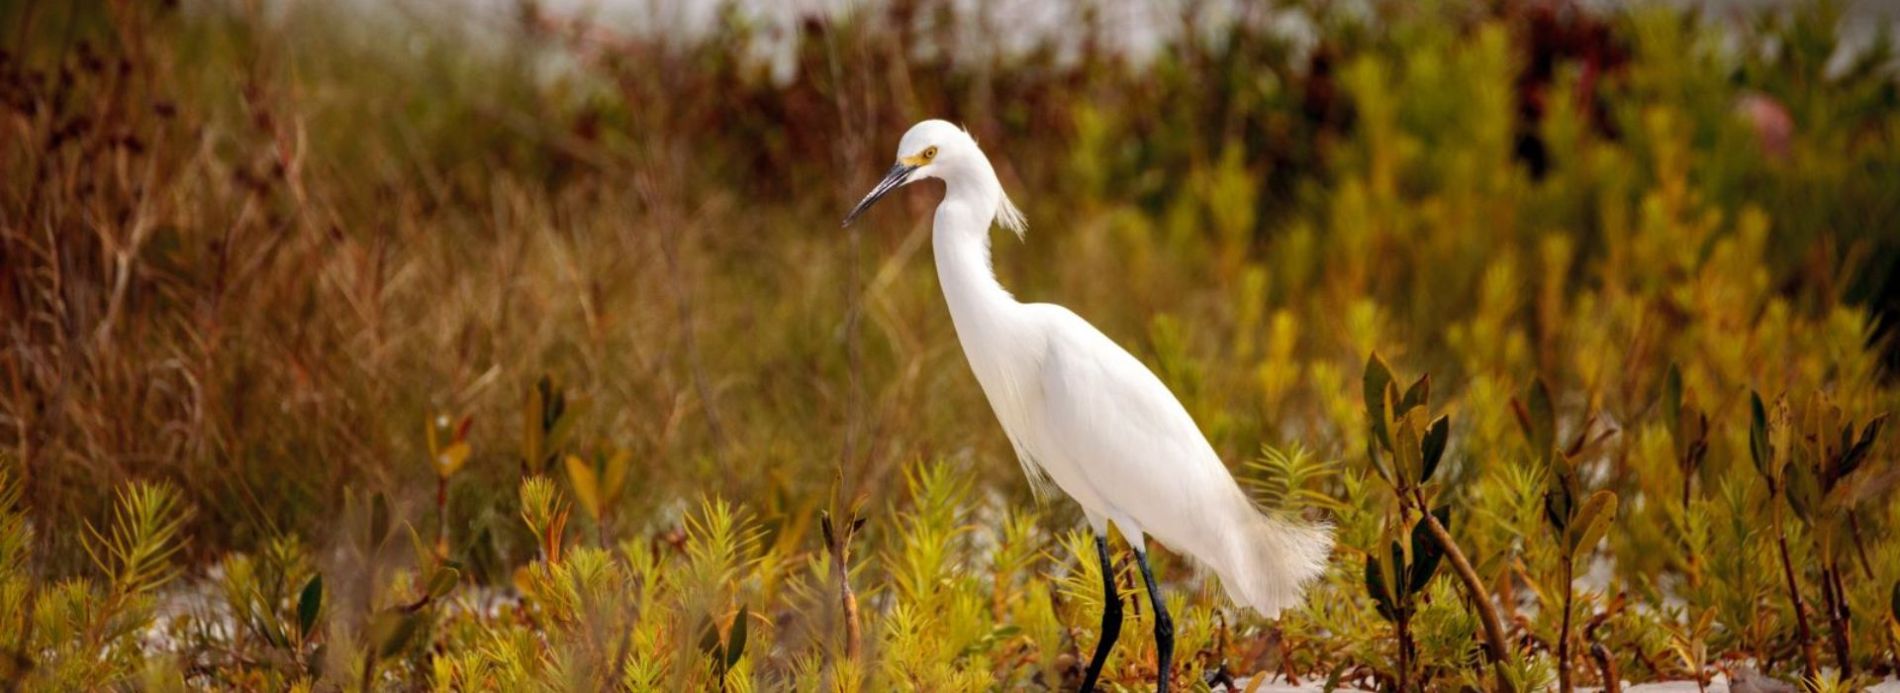 egret in wetlands